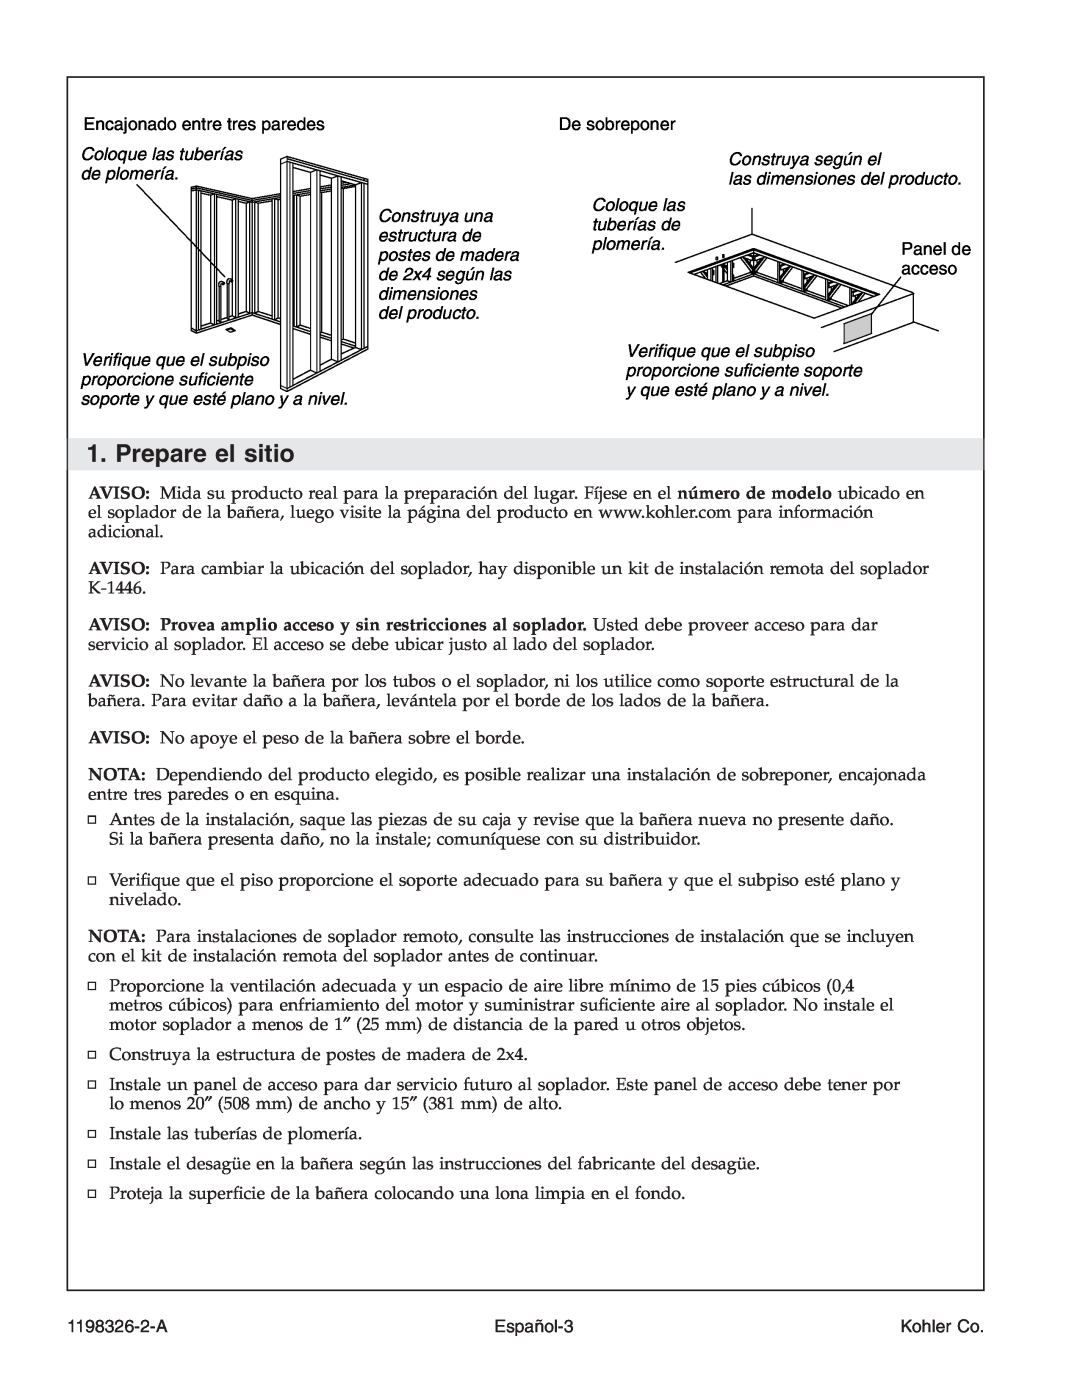 Kohler 1198326-2-A manual Prepare el sitio, Coloque las tuberías de plomería, del producto, Panel de, acceso, Español-3 